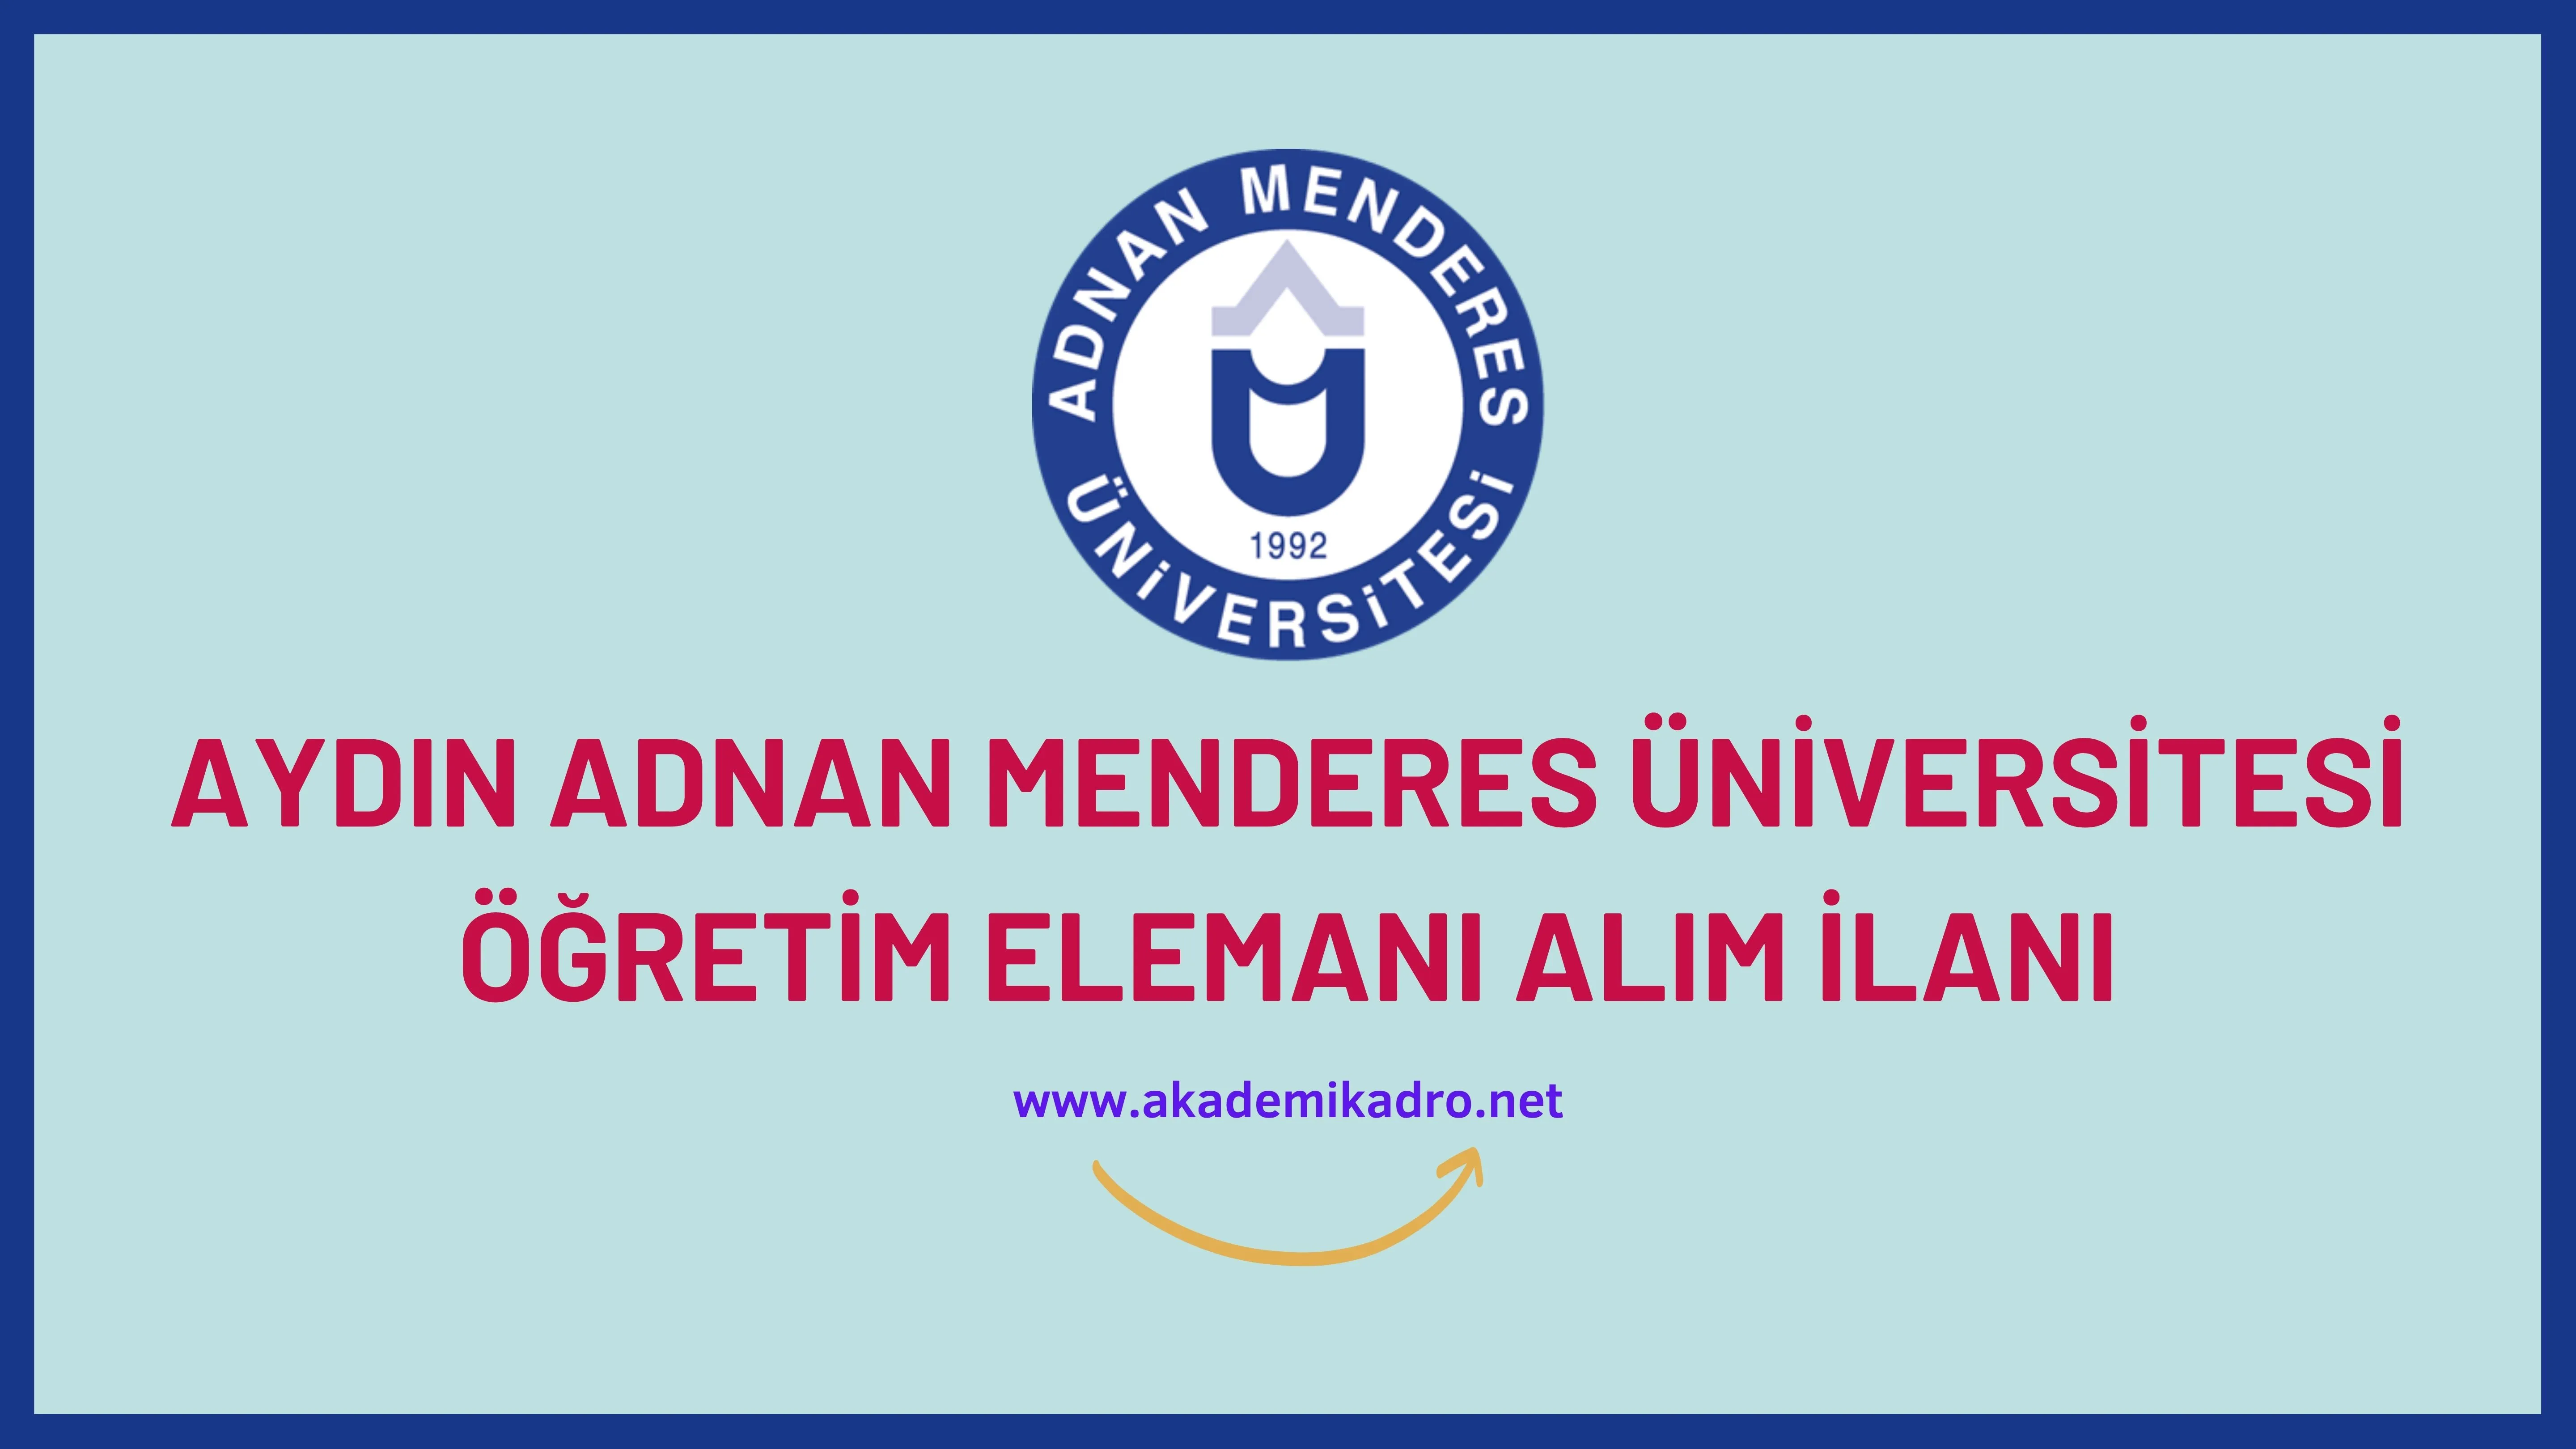 Aydın Adnan Menderes Üniversitesi 6 öğretim üyesi ve 3 Öğretim Görevlisi alacaktır. Son başvuru tarihi 27 Eylül 2023